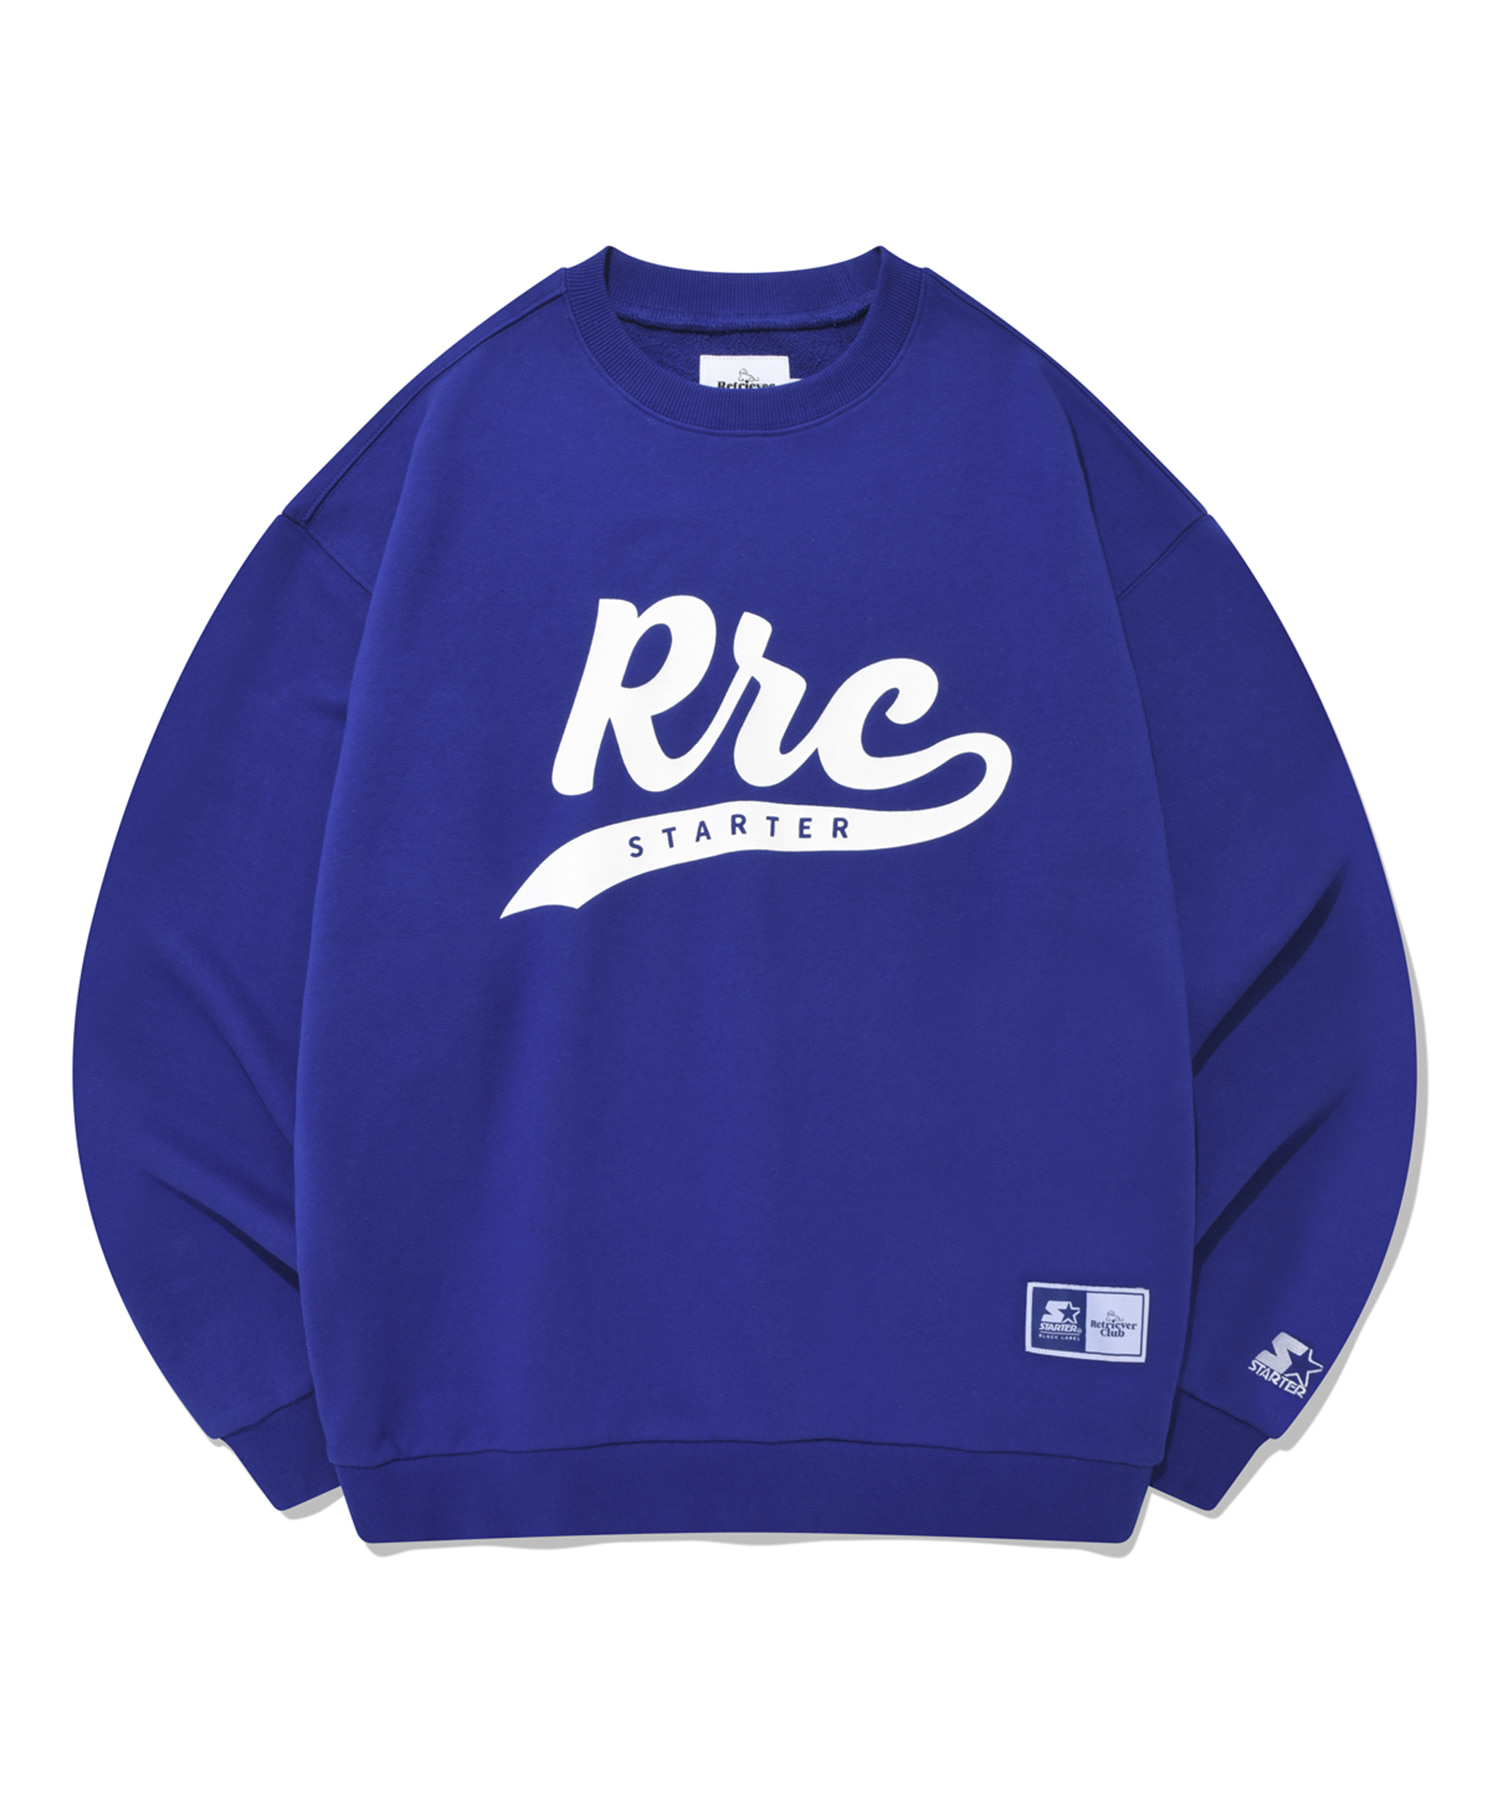 RC X STARTER RRC ORIGINAL LOGO CREWNECK [ROYAL BLUE]